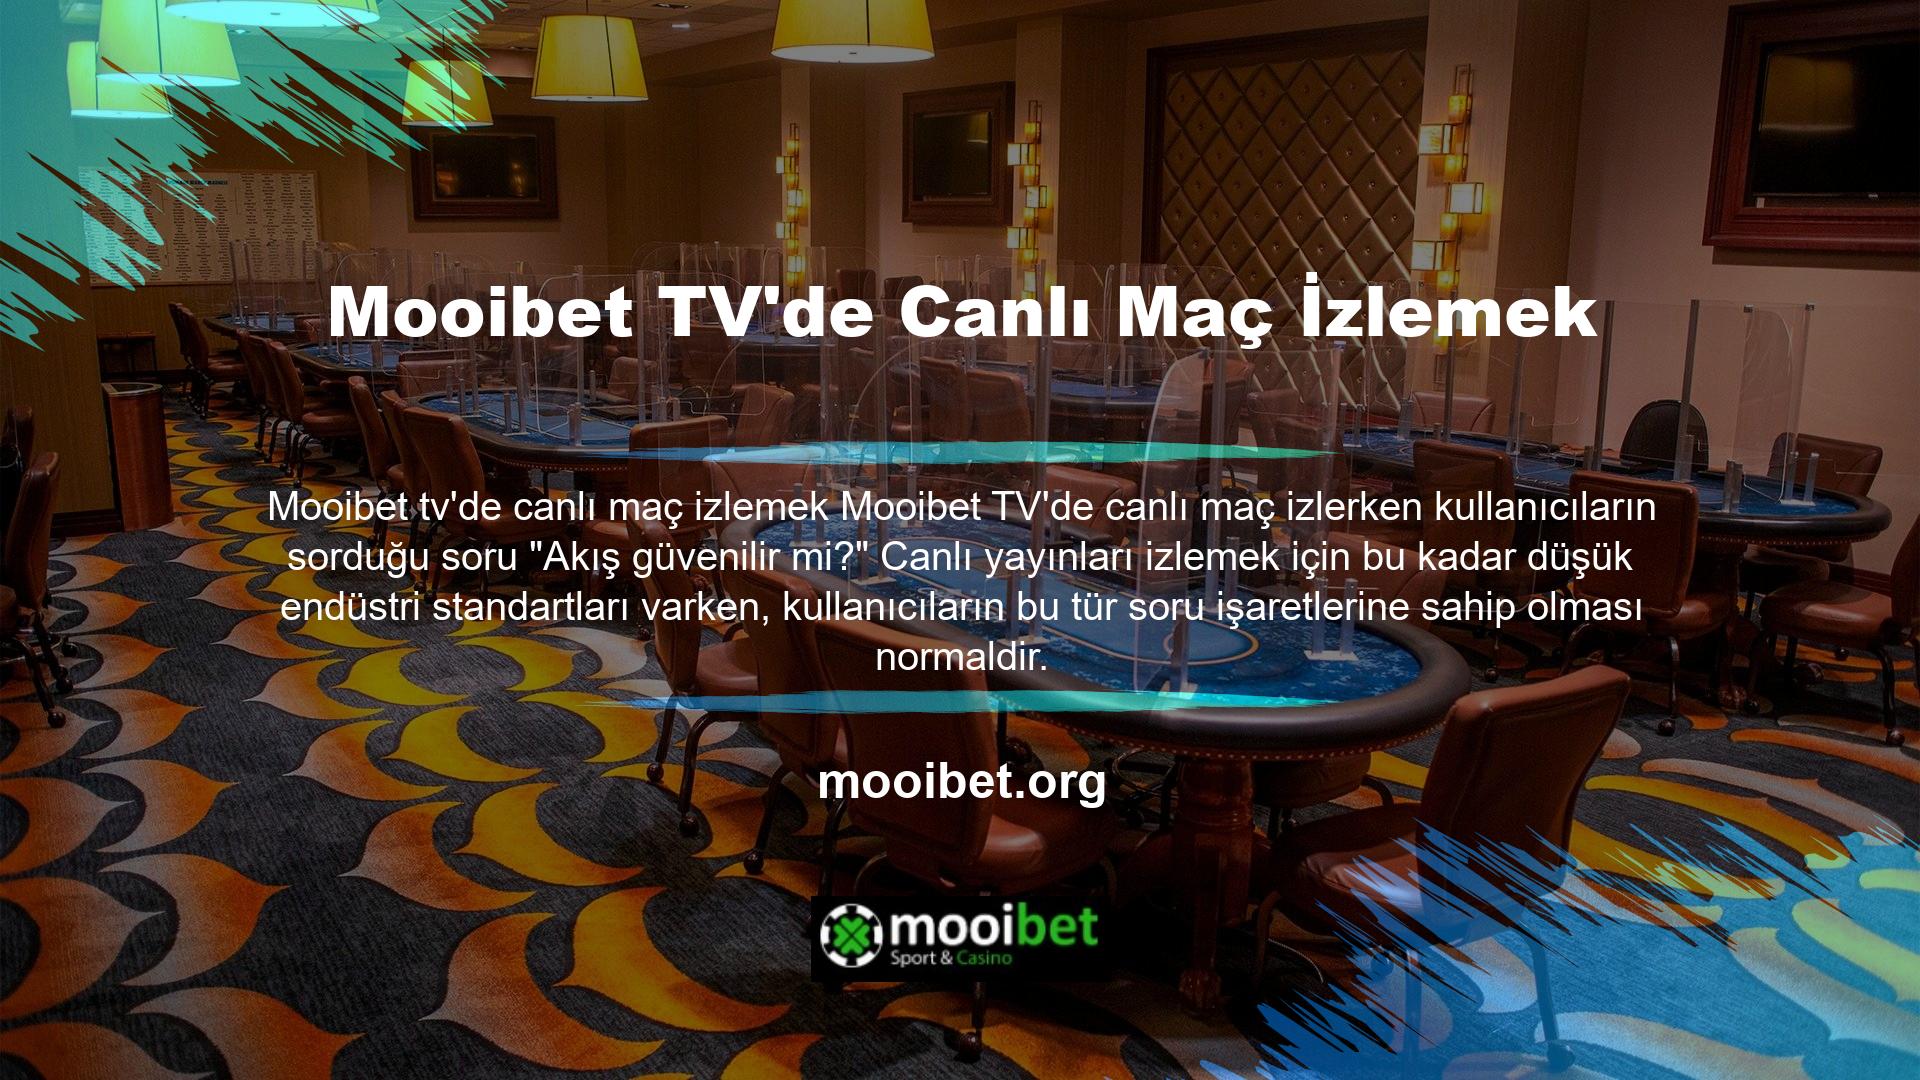 Ancak Mooibet TV'nin canlı maç yayını özelliği kullanıcılara kaliteli bir hizmet sunmaktadır